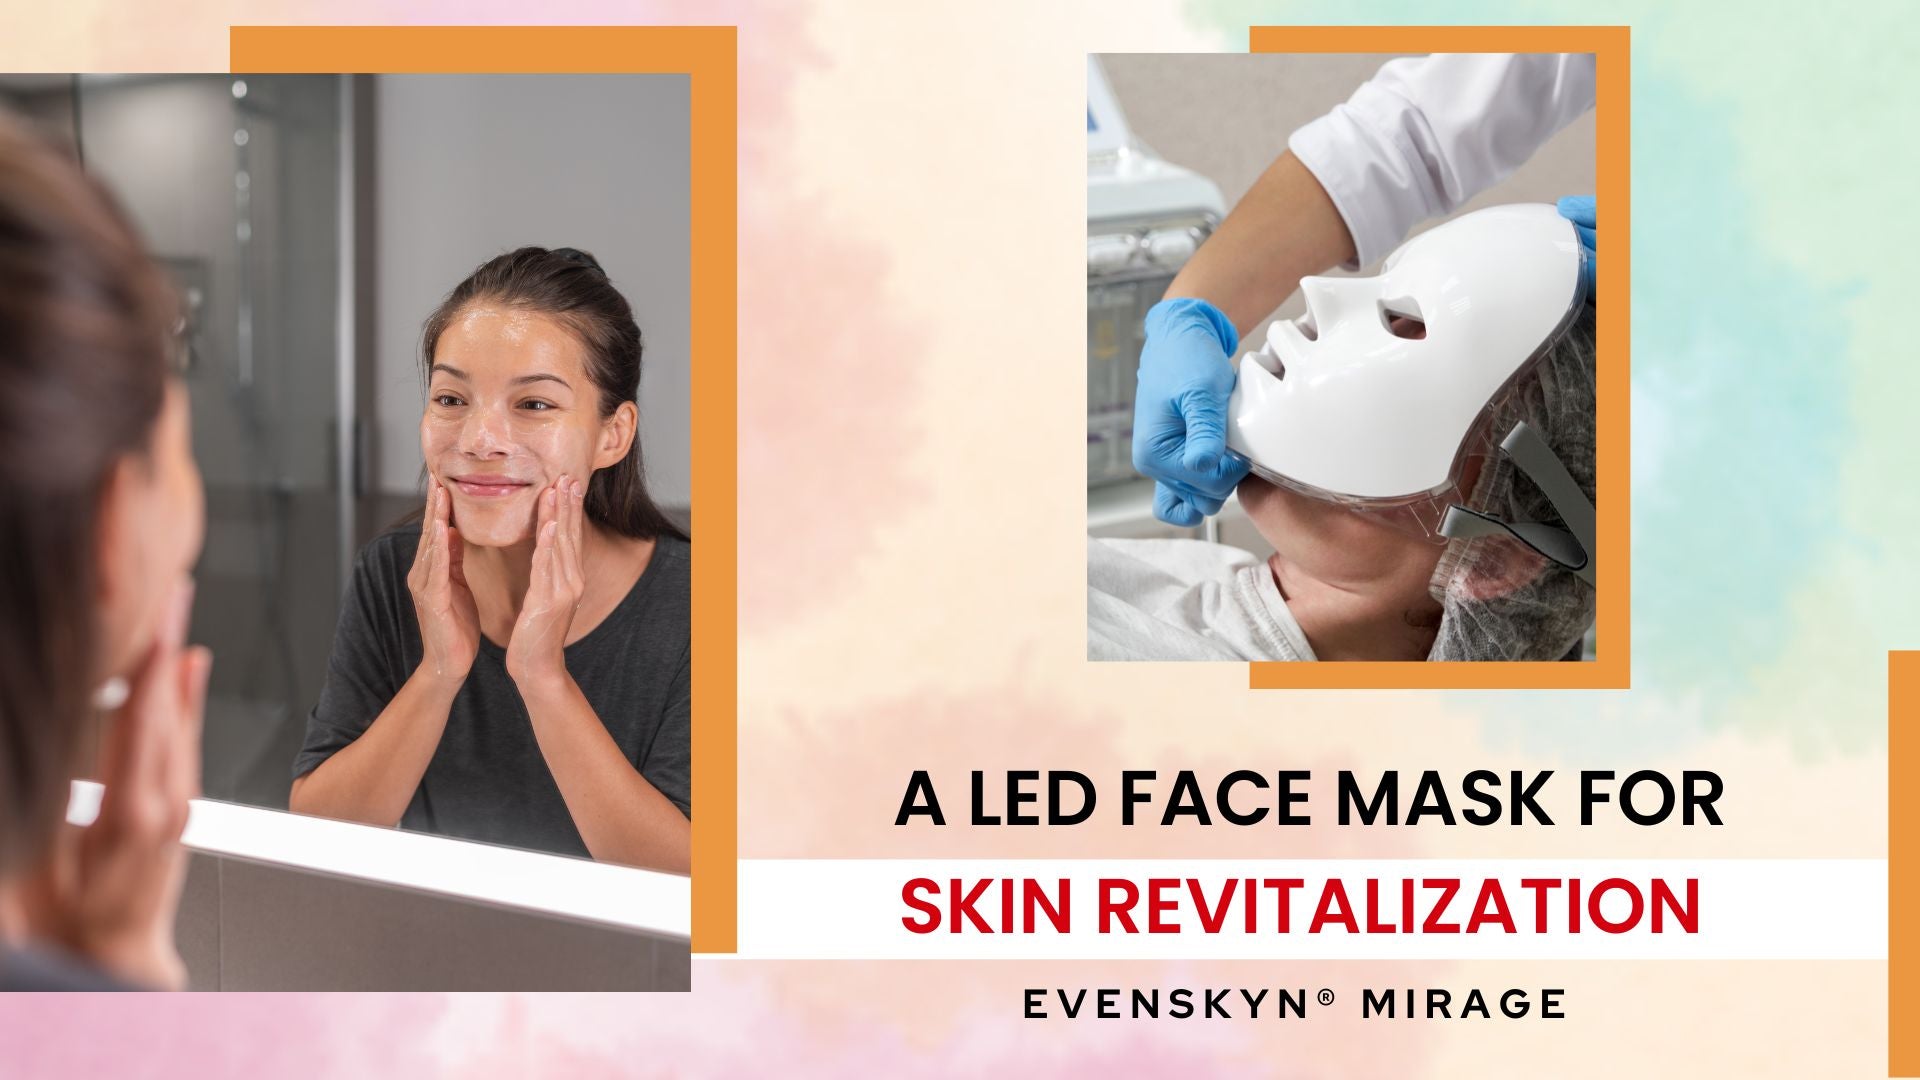 Evenskyn® Mirage: A Led Face Mask for Skin Revitalization